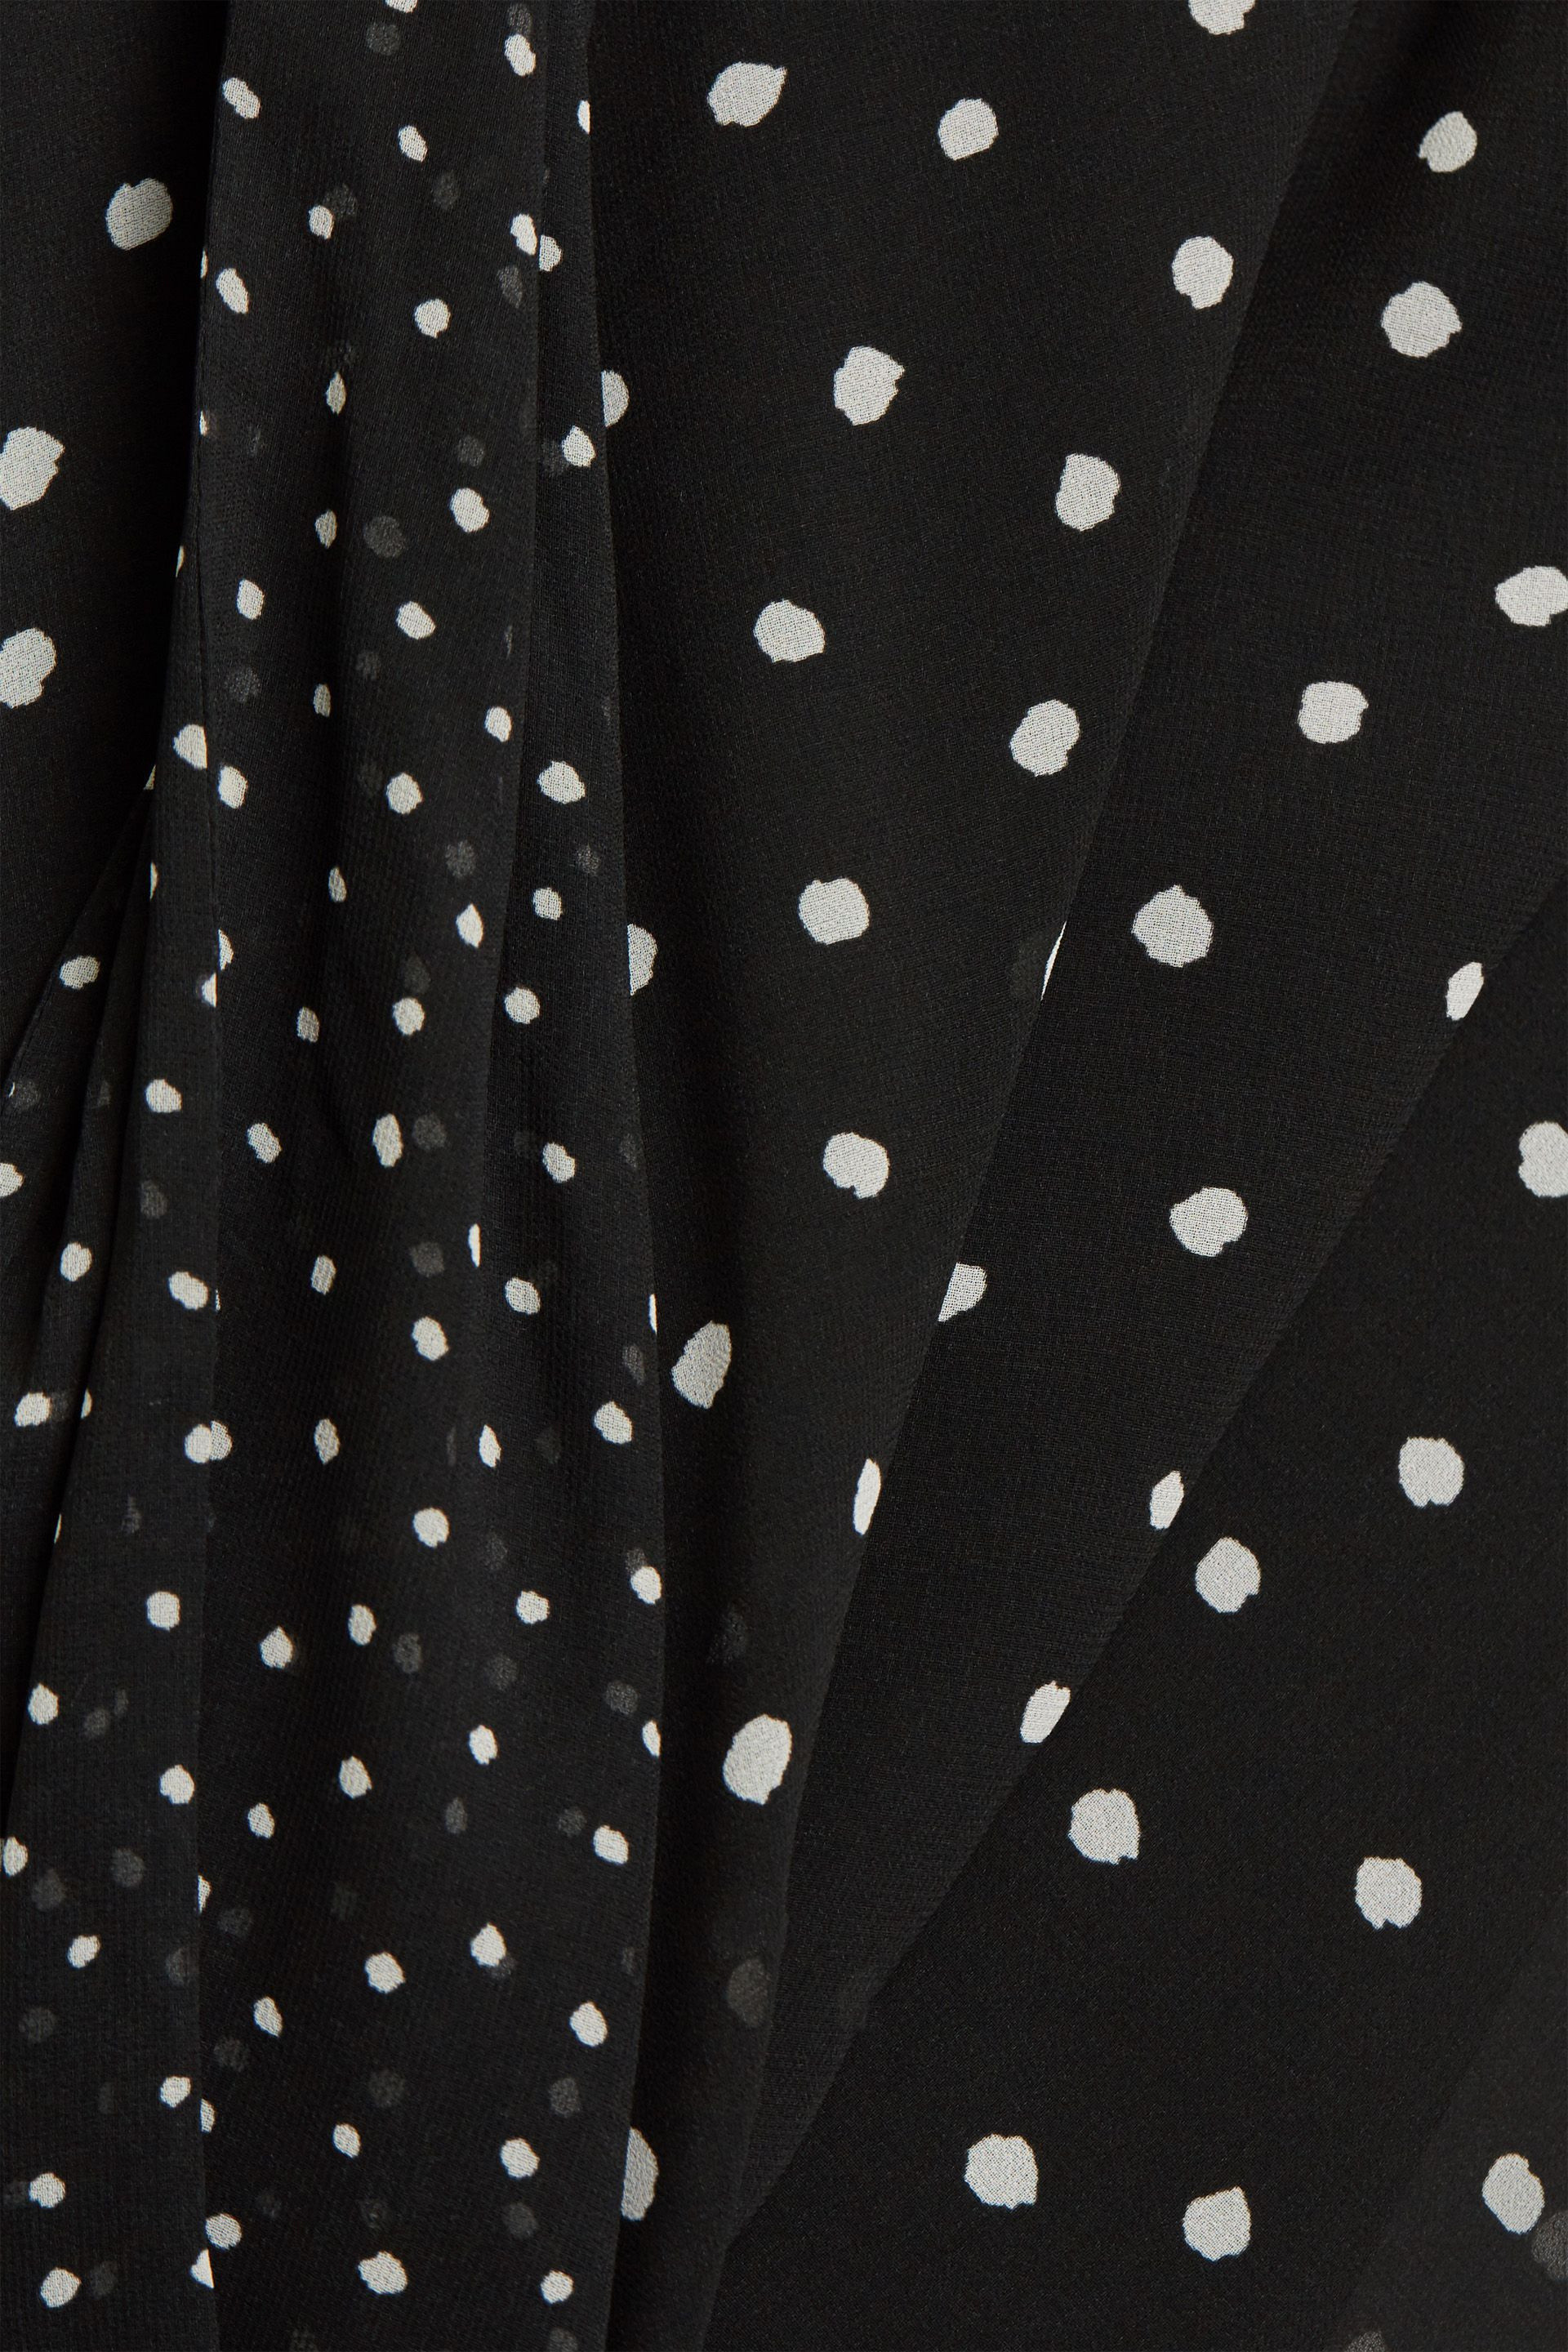 Esprit - Polka dot dress, Black, large image number 1